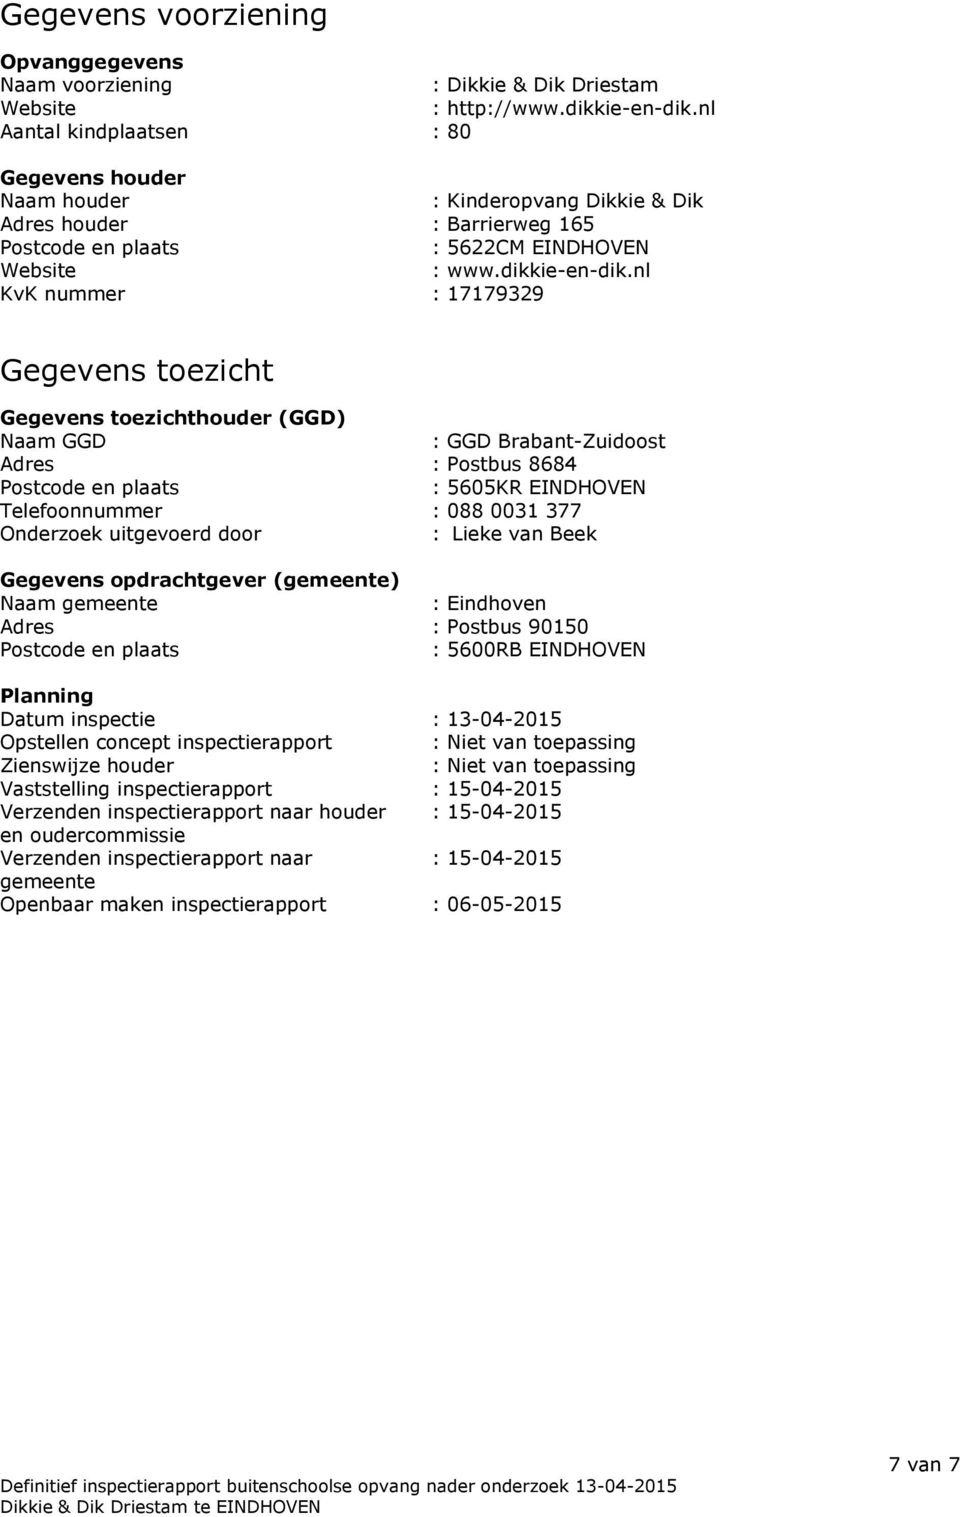 nl KvK nummer : 17179329 Gegevens toezicht Gegevens toezichthouder (GGD) Naam GGD : GGD Brabant-Zuidoost Adres : Postbus 8684 Postcode en plaats : 5605KR EINDHOVEN Telefoonnummer : 088 0031 377